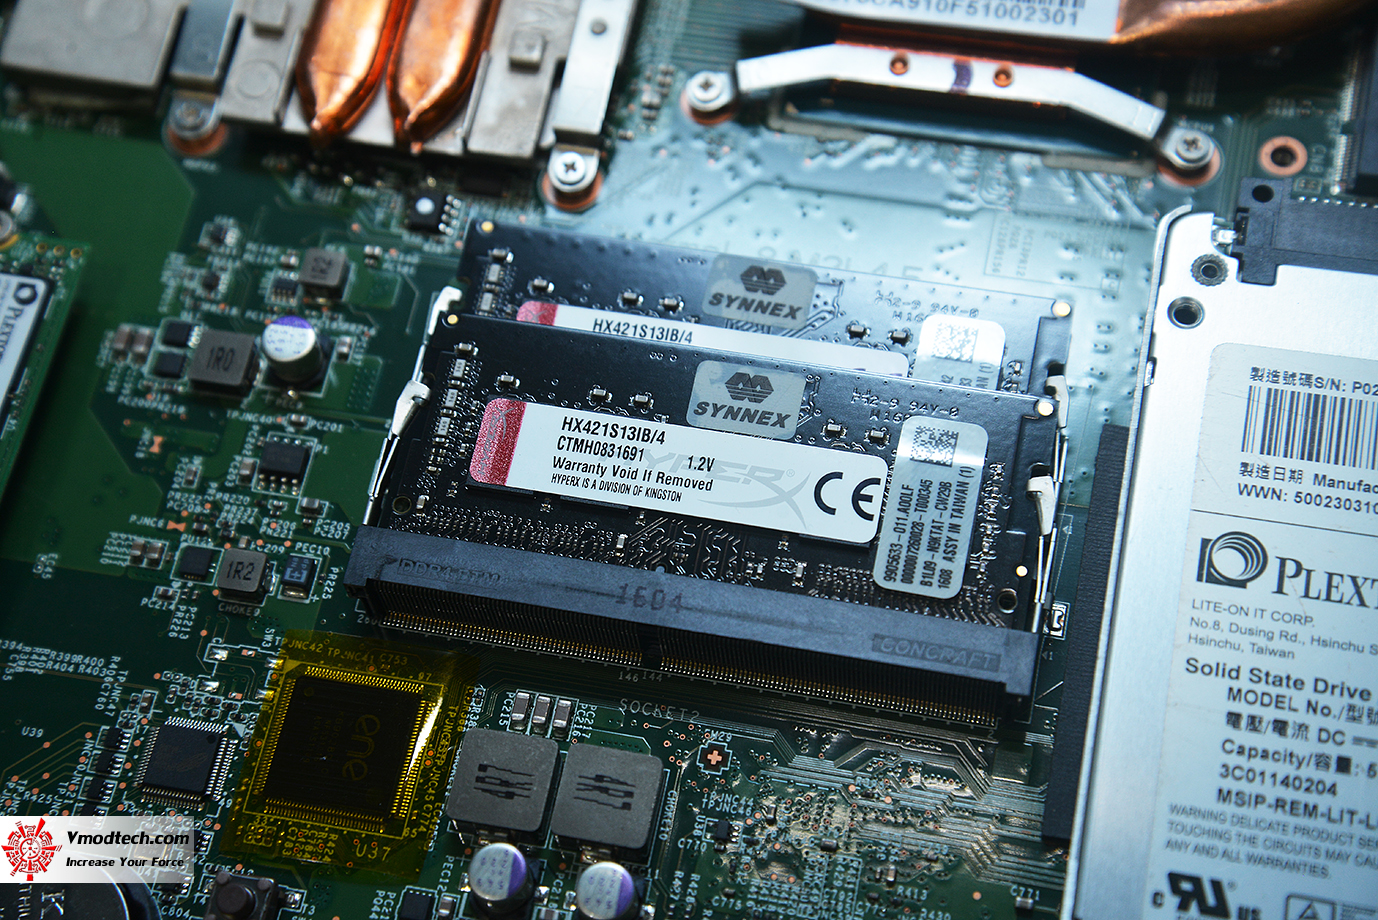 dsc 7573 Upgrade old laptop from HDD to SSD and Memory อัพเกรดแล็ปท็อปรุ่นเก่าให้เร็วแรงขึ้นกว่าเดิมด้วย SSD และ แรม